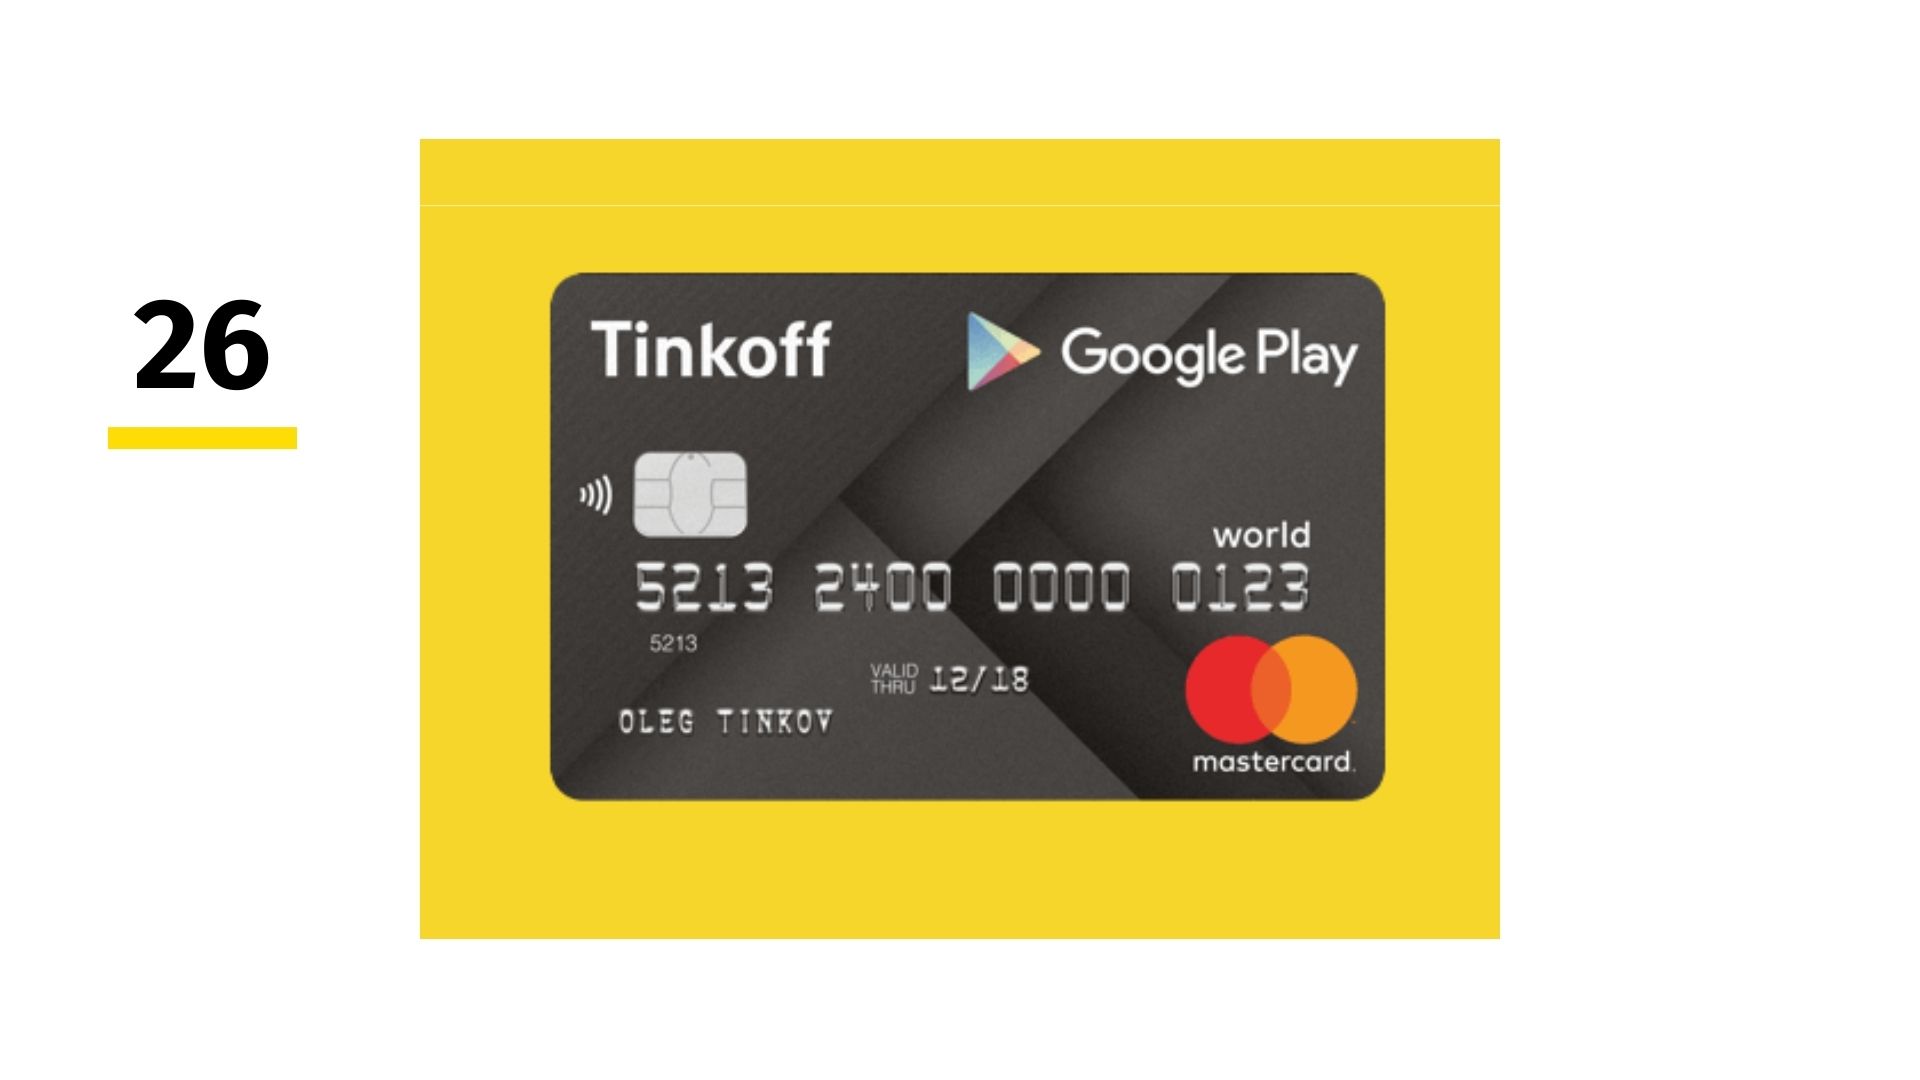 Кредитная карта Тинькофф Google Play. Минусы и преимущества